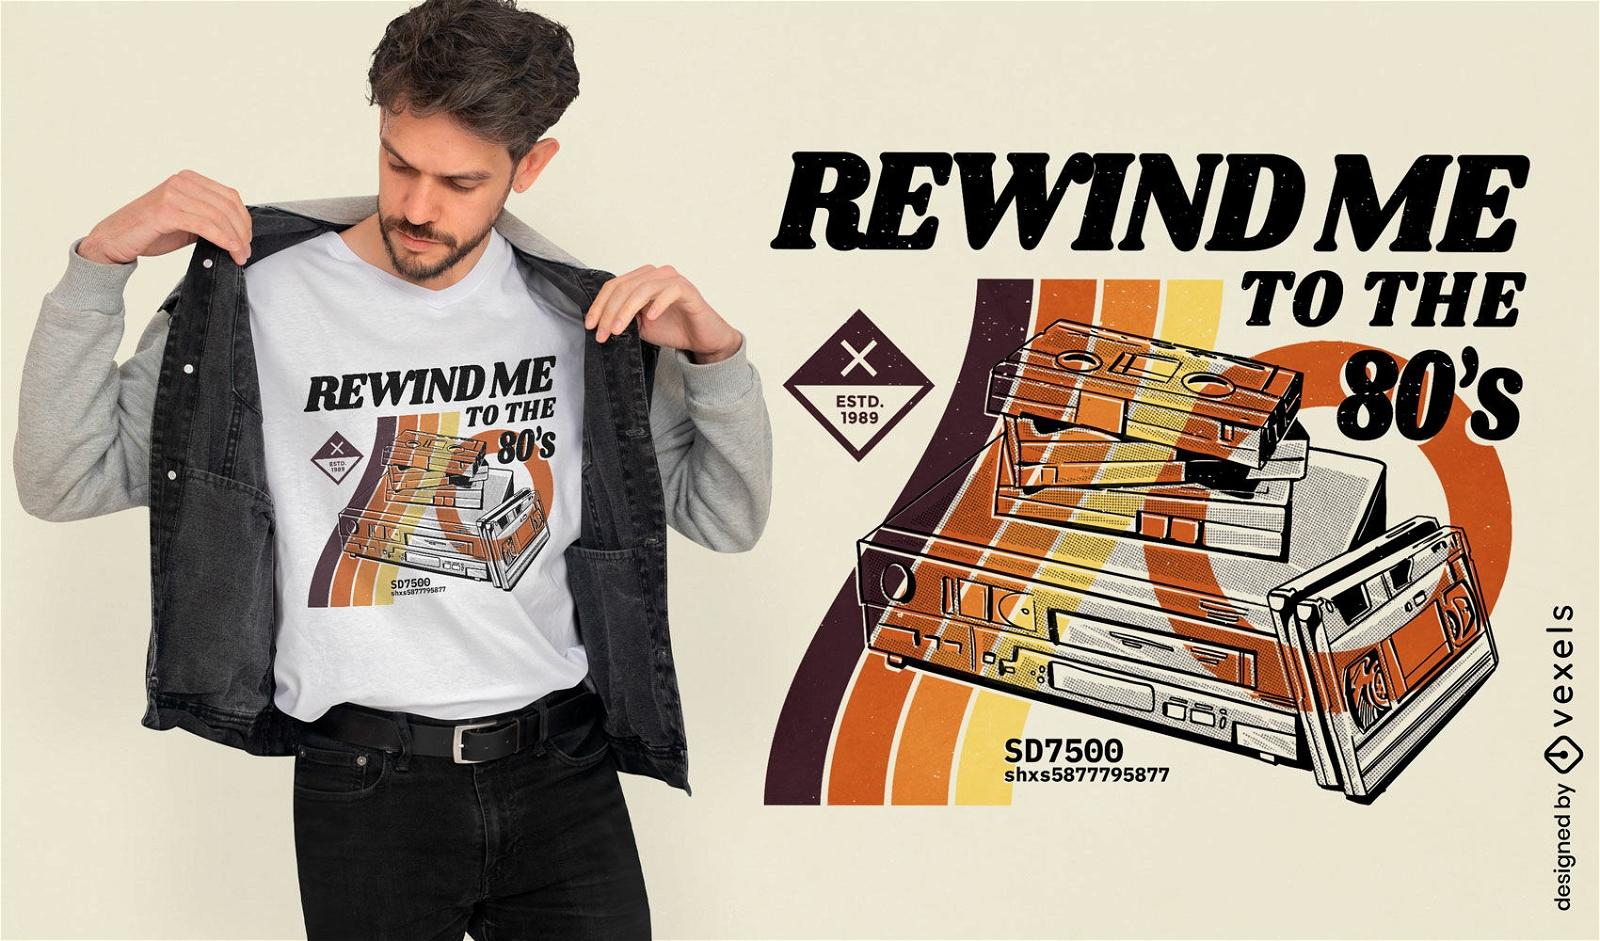 Rewind me to the 80's retro t-shirt design